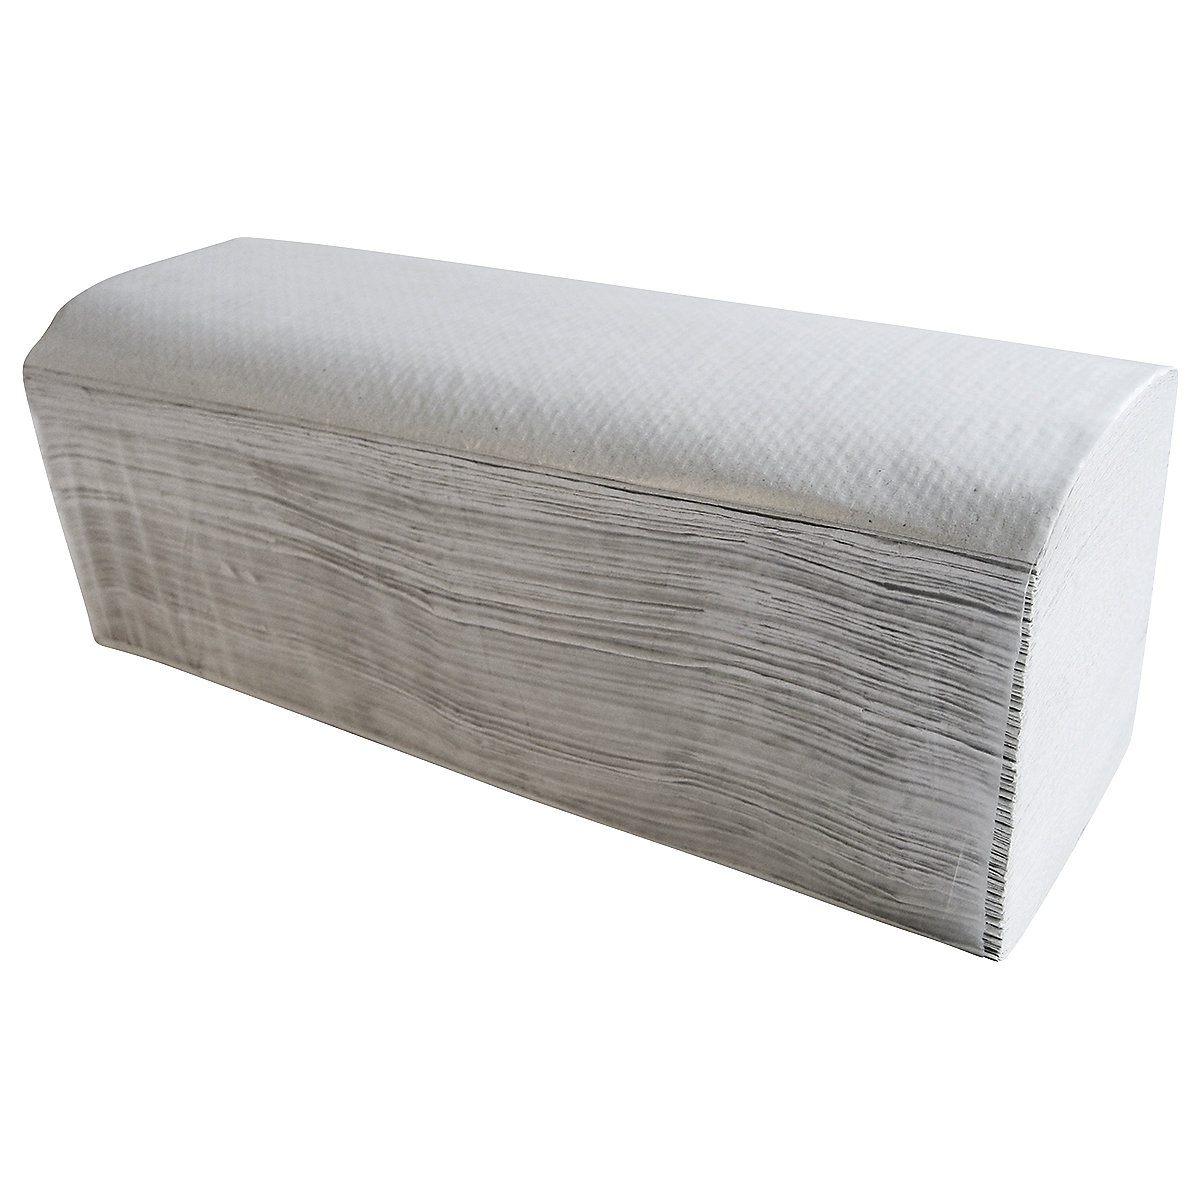 Składane ręczniki papierowe Recycling – CWS